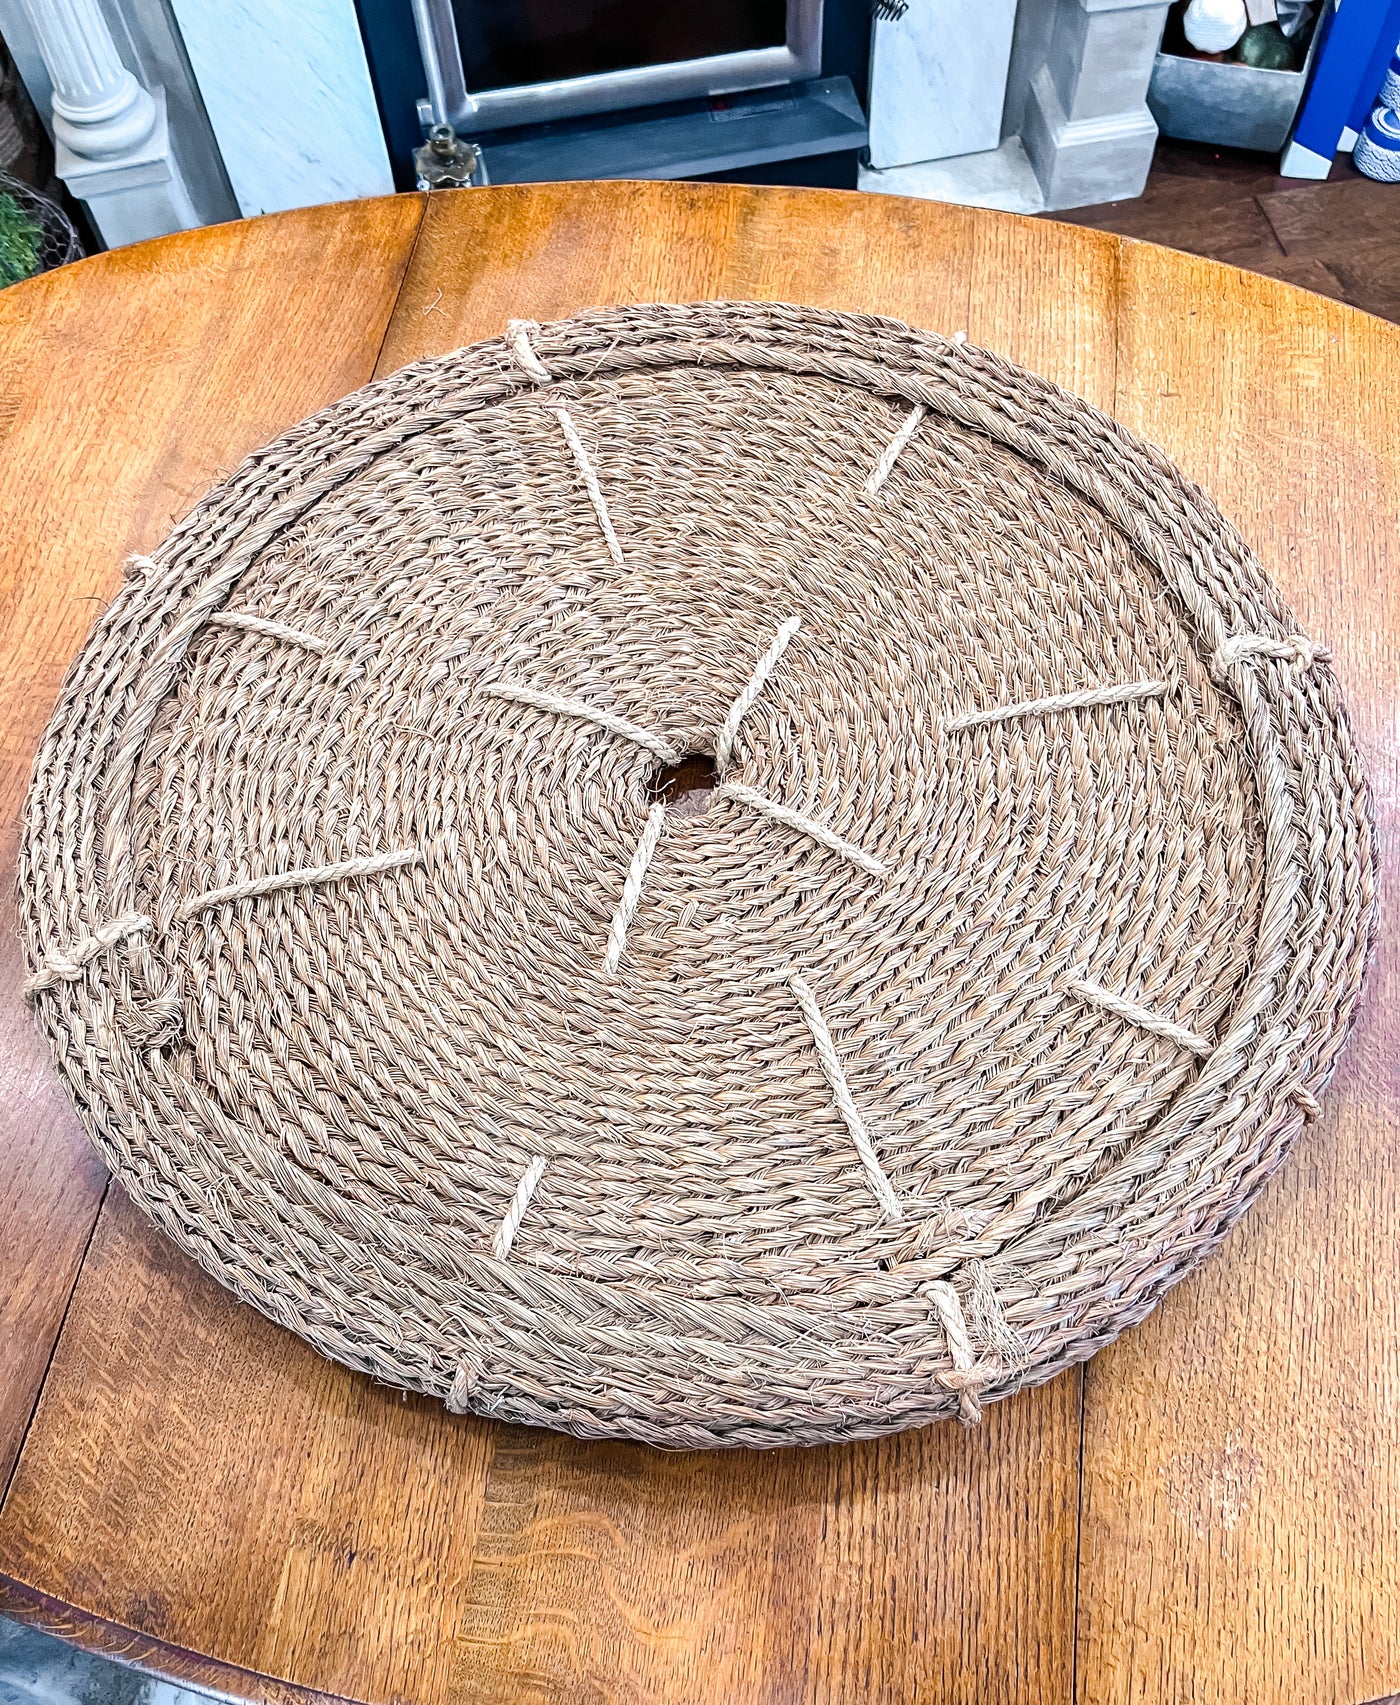 Antique Provencal Basket Woven Olive Oil Filter